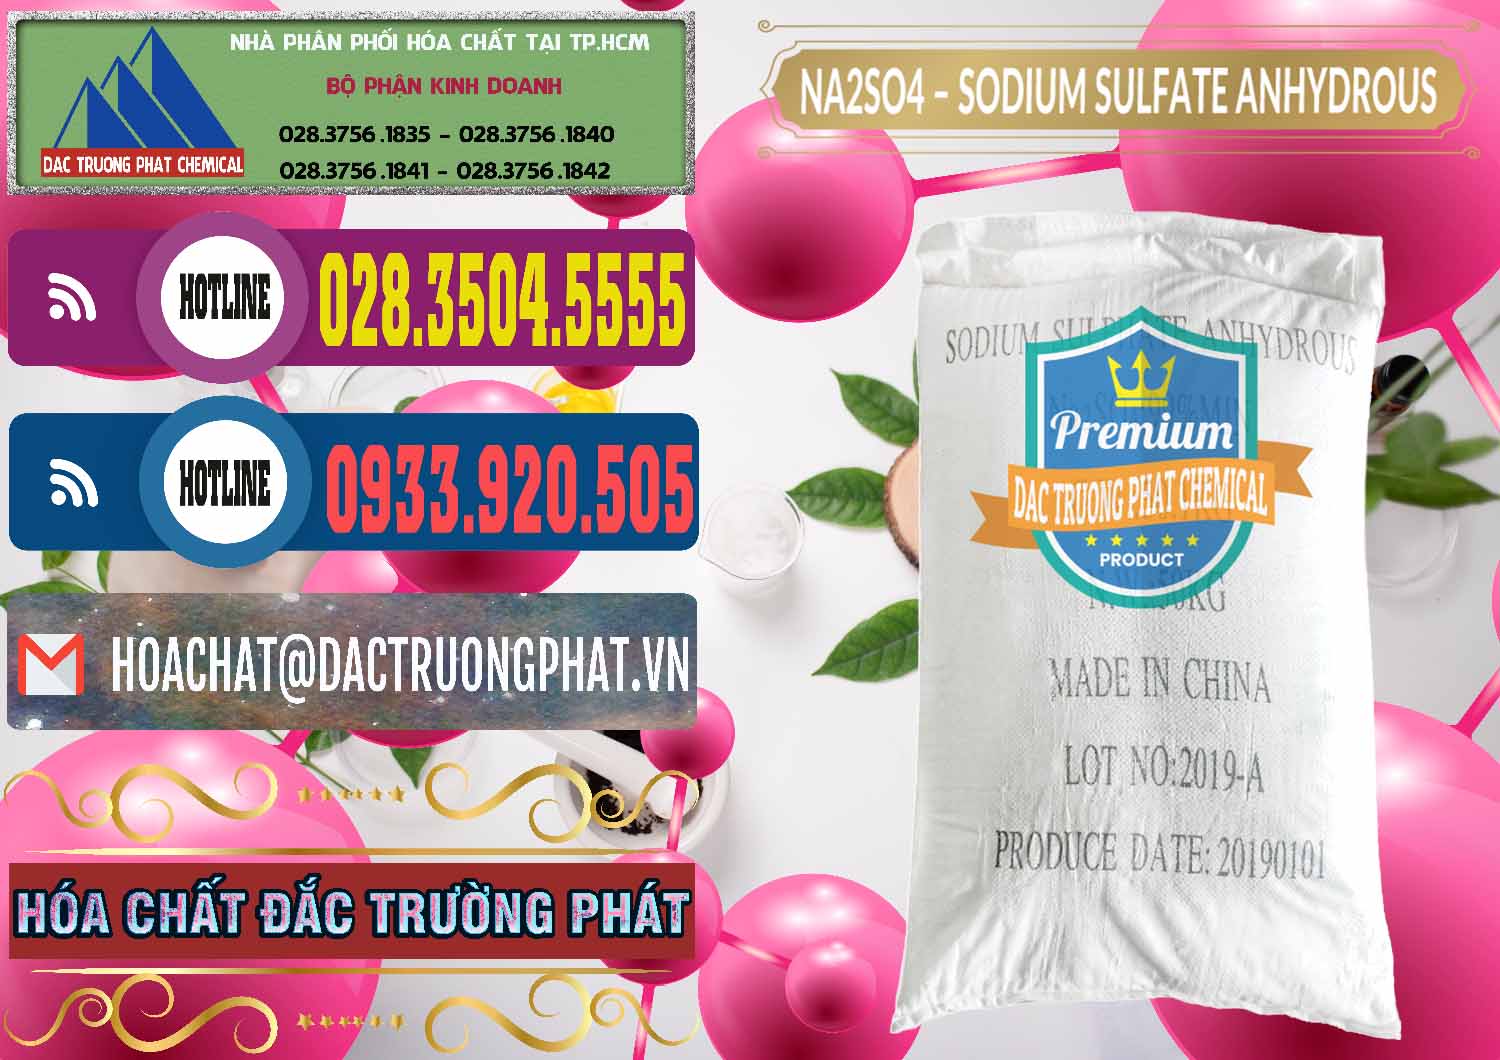 Cty chuyên phân phối ( bán ) Sodium Sulphate - Muối Sunfat Na2SO4 PH 6-8 Trung Quốc China - 0099 - Đơn vị cung ứng & phân phối hóa chất tại TP.HCM - muabanhoachat.com.vn